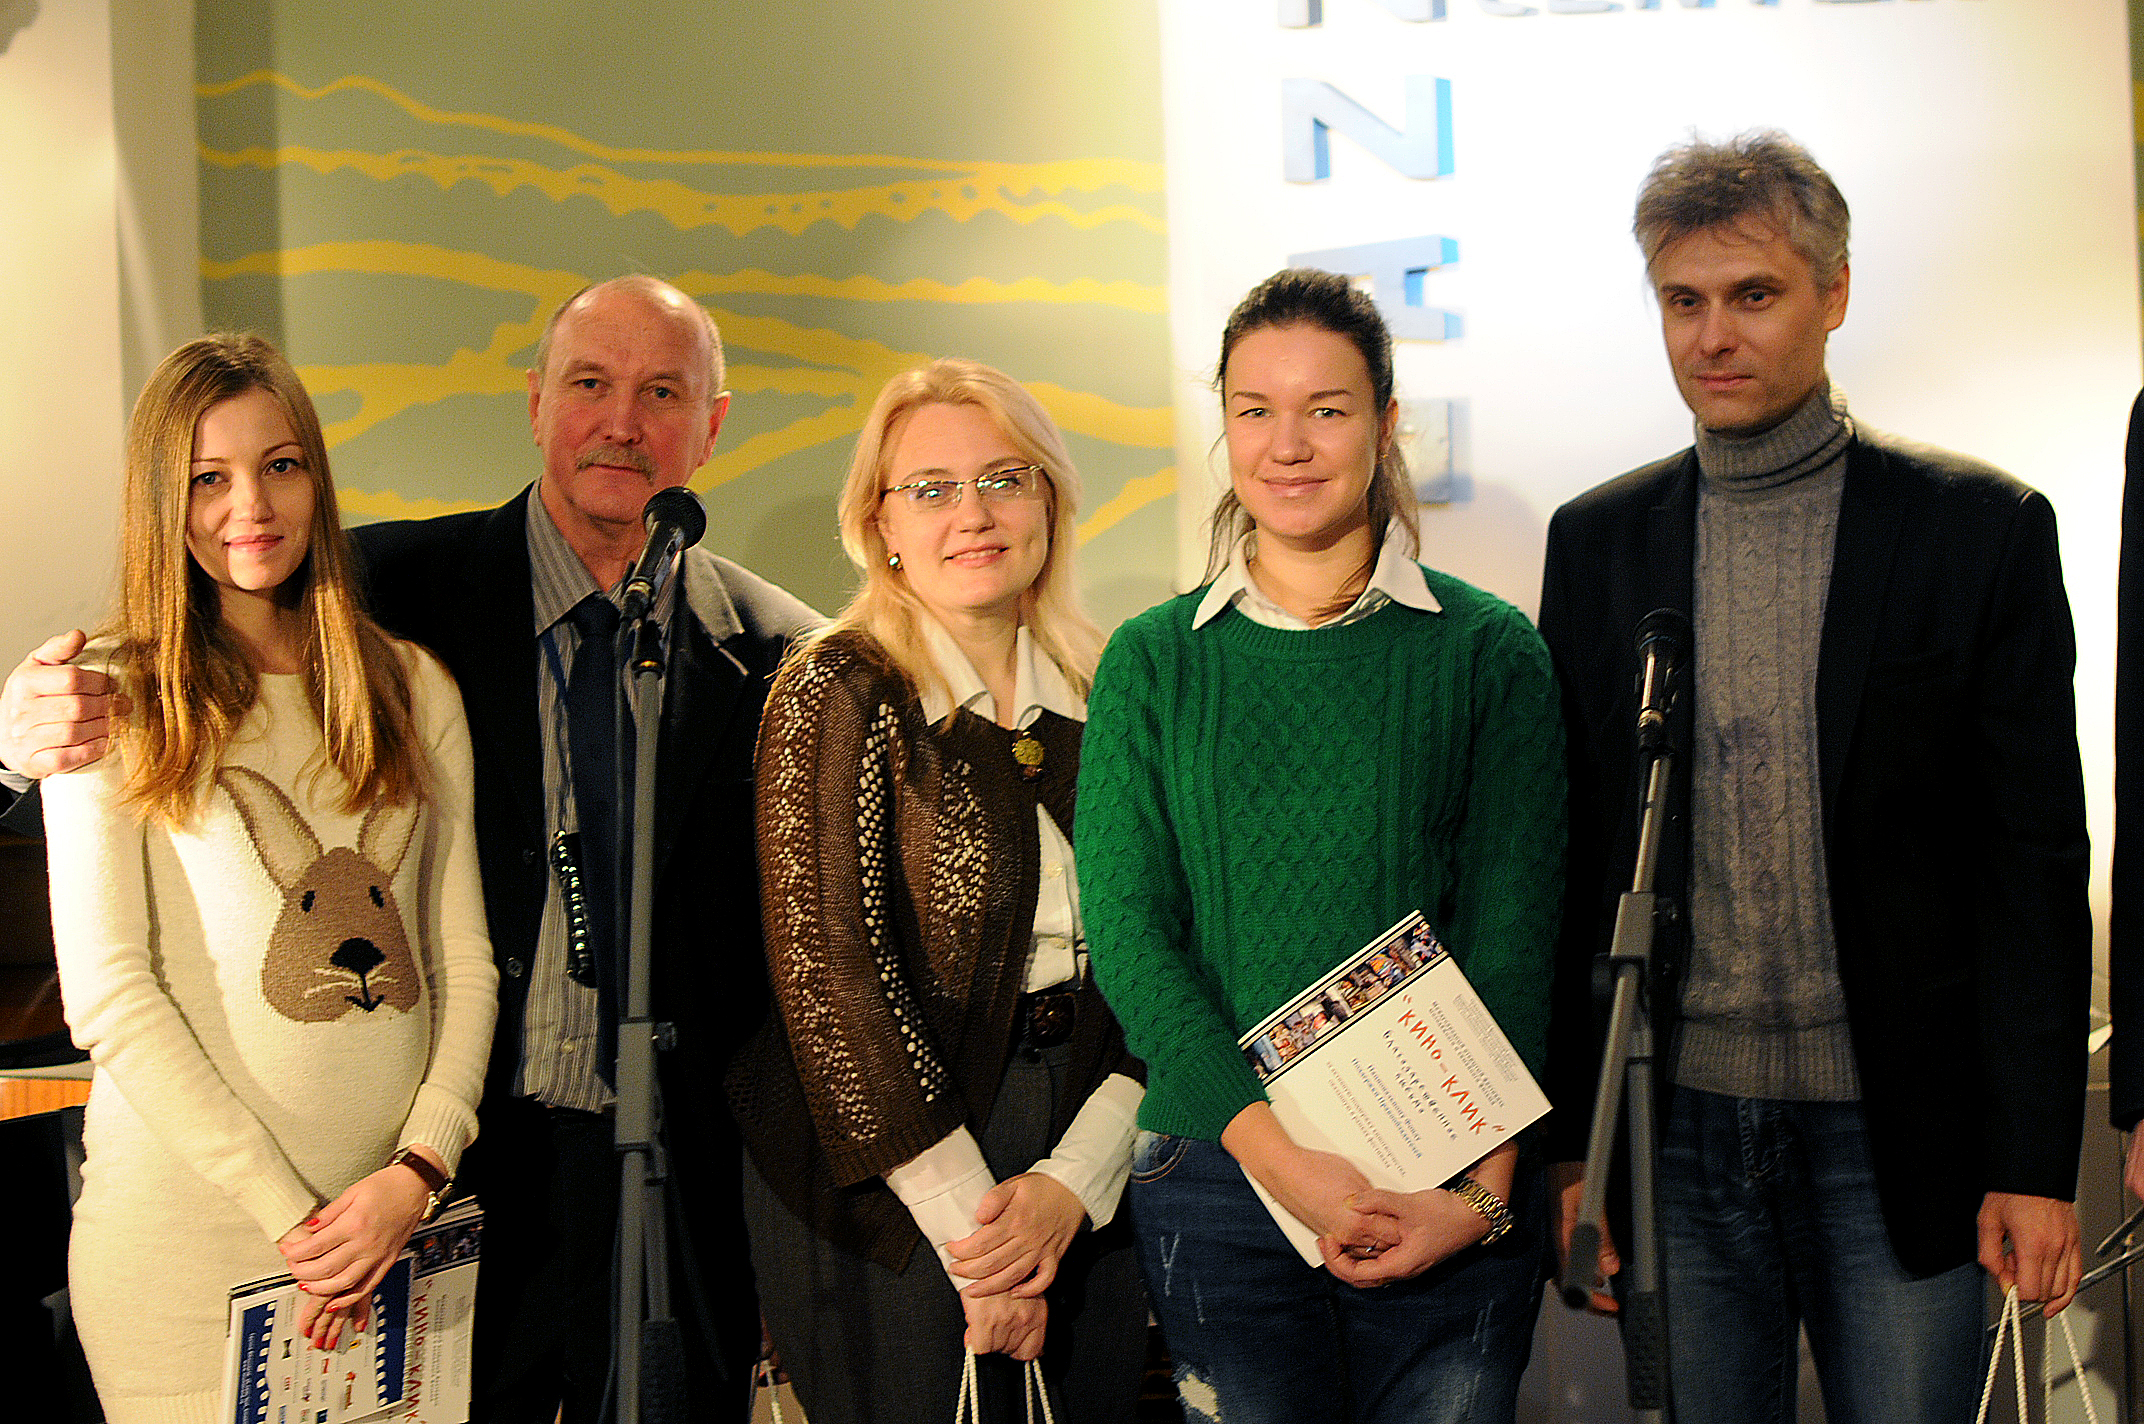 Завершился VIII Международный открытый фестиваль молодежного и семейного фильма «Кино-Клик», проходивший при поддержке НФПП